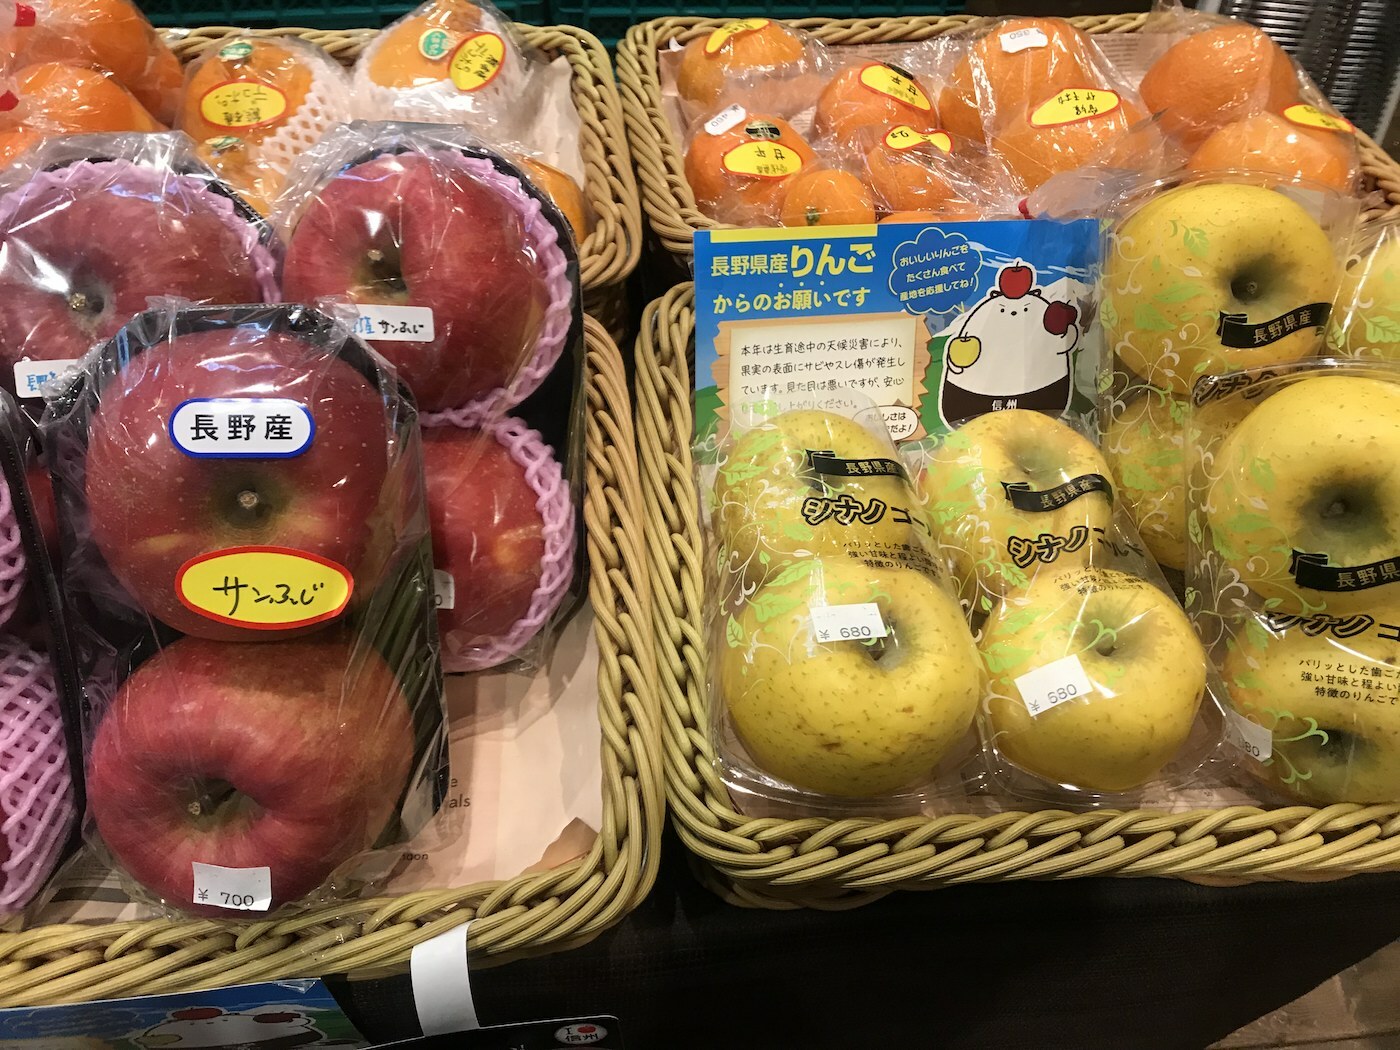 長野はりんご王国。品種によって美味しさもいろいろ